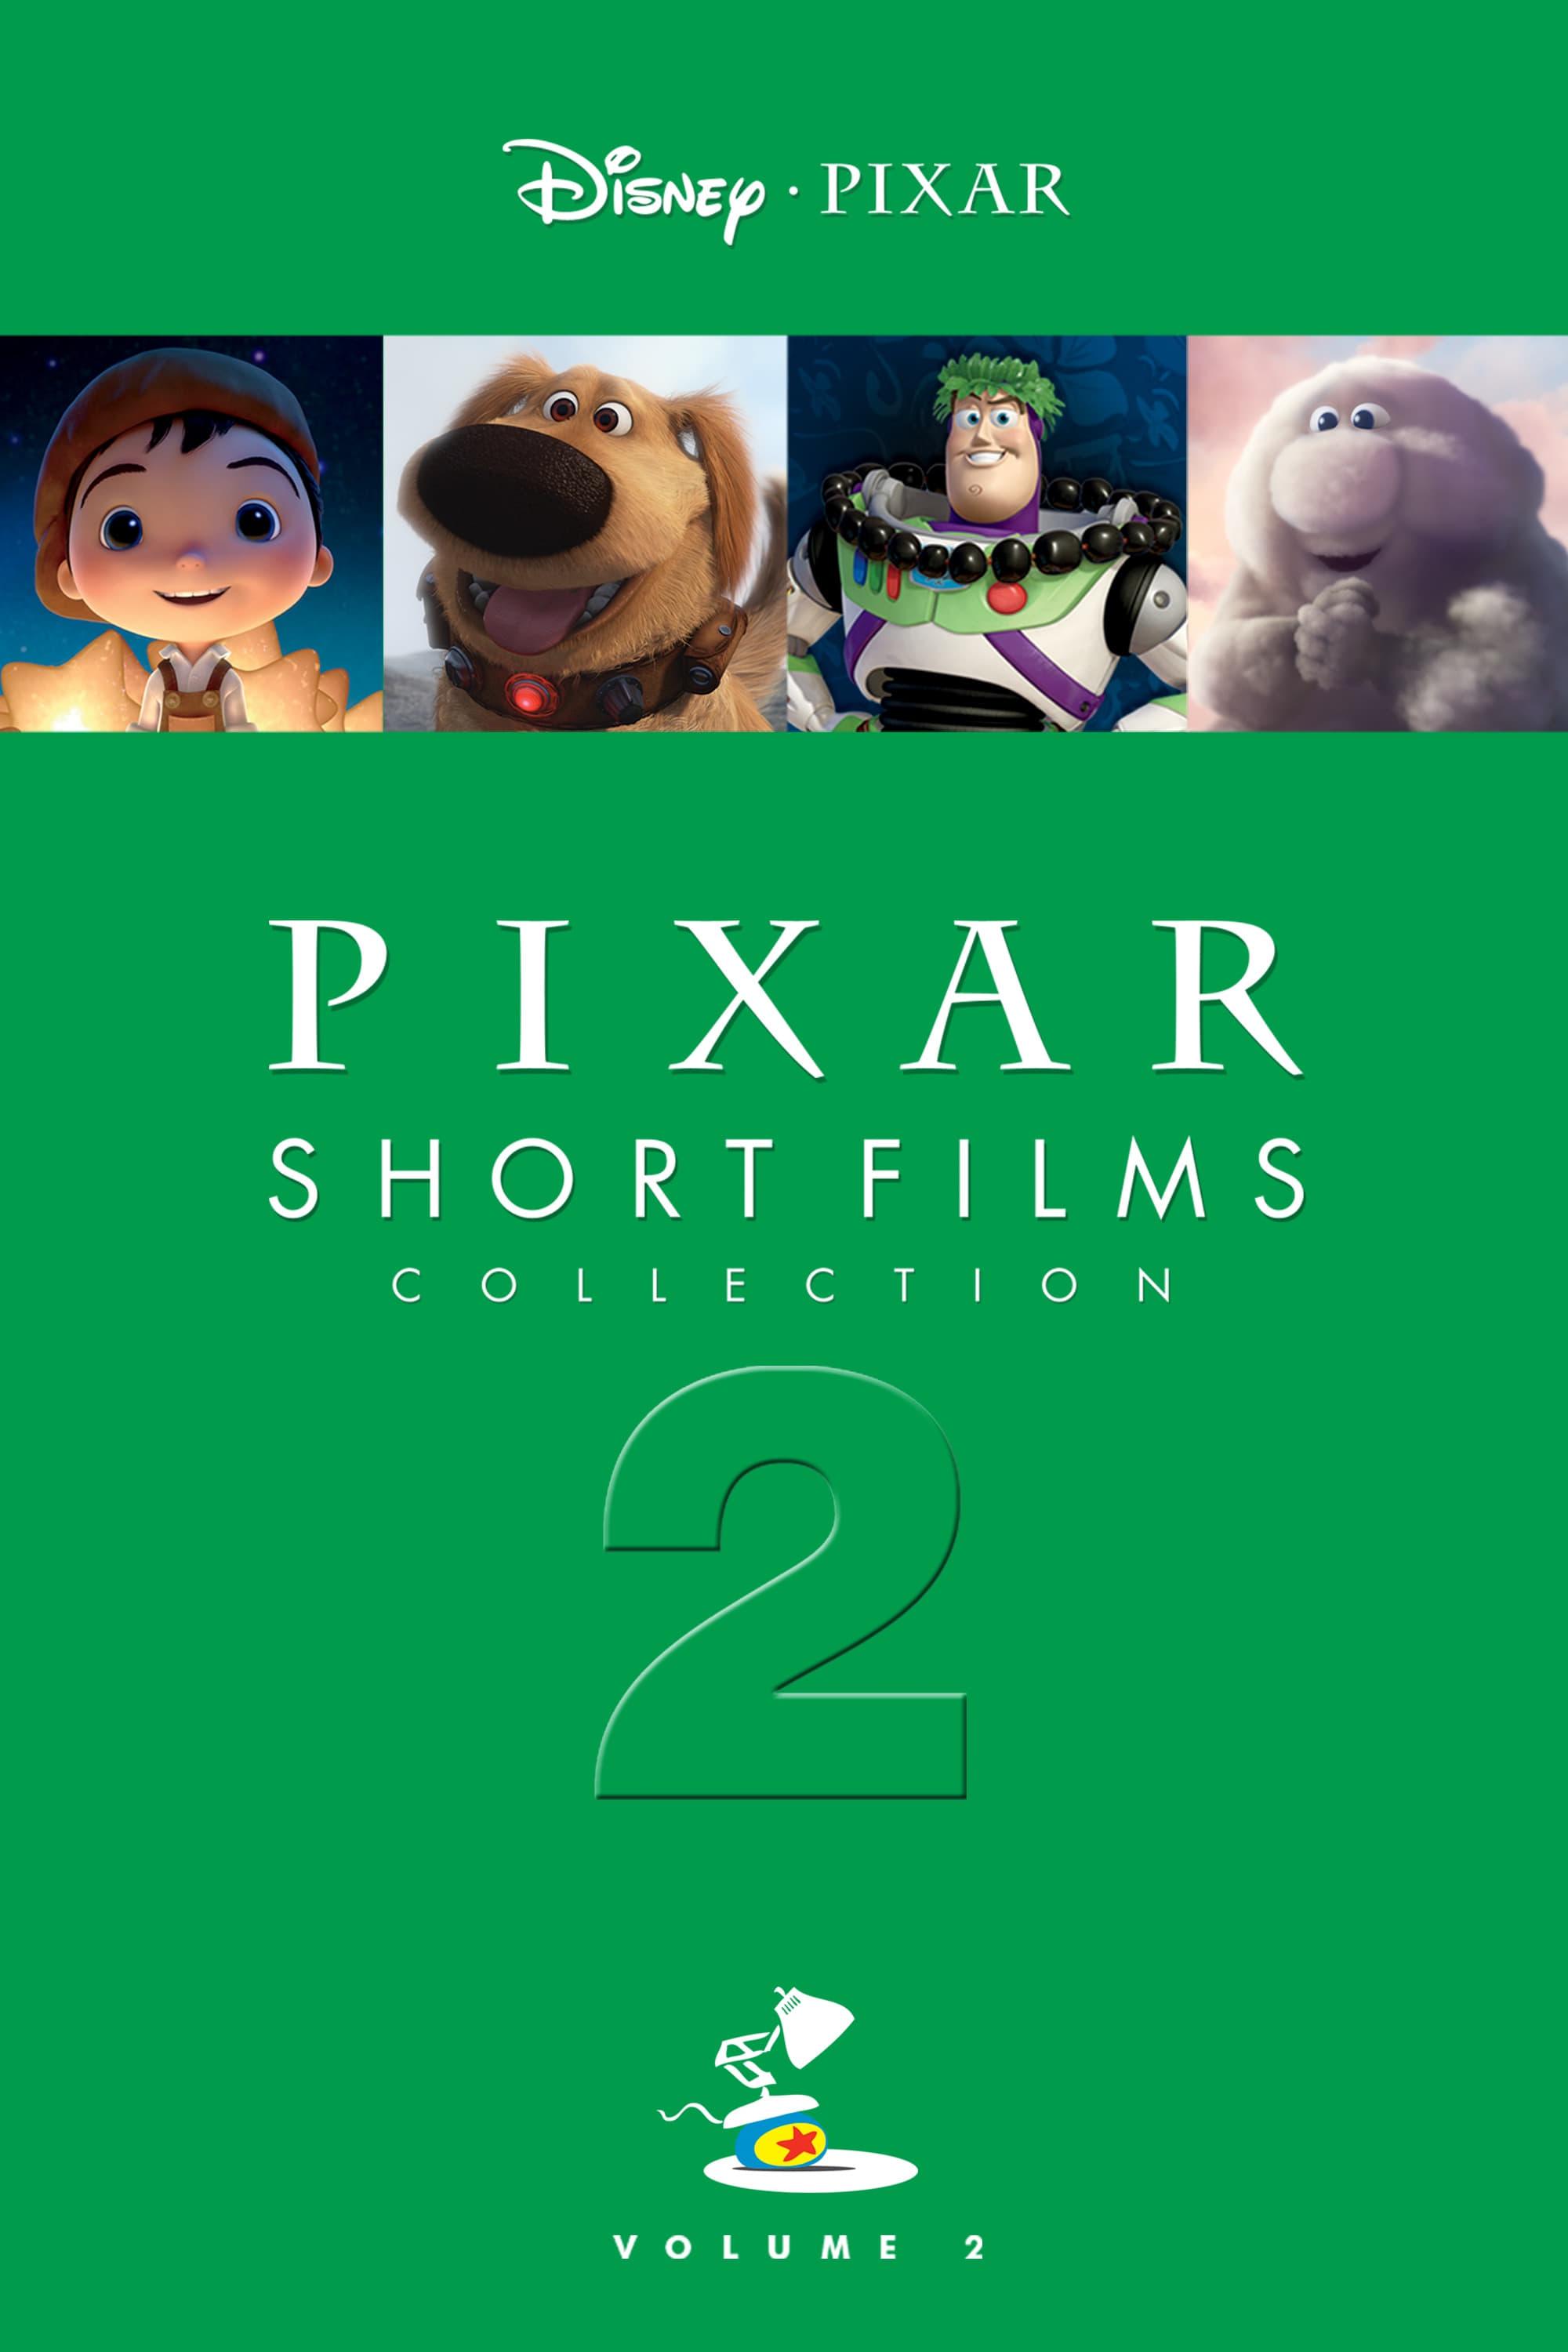 Pixar Short Films Collection: Volume 2 poster